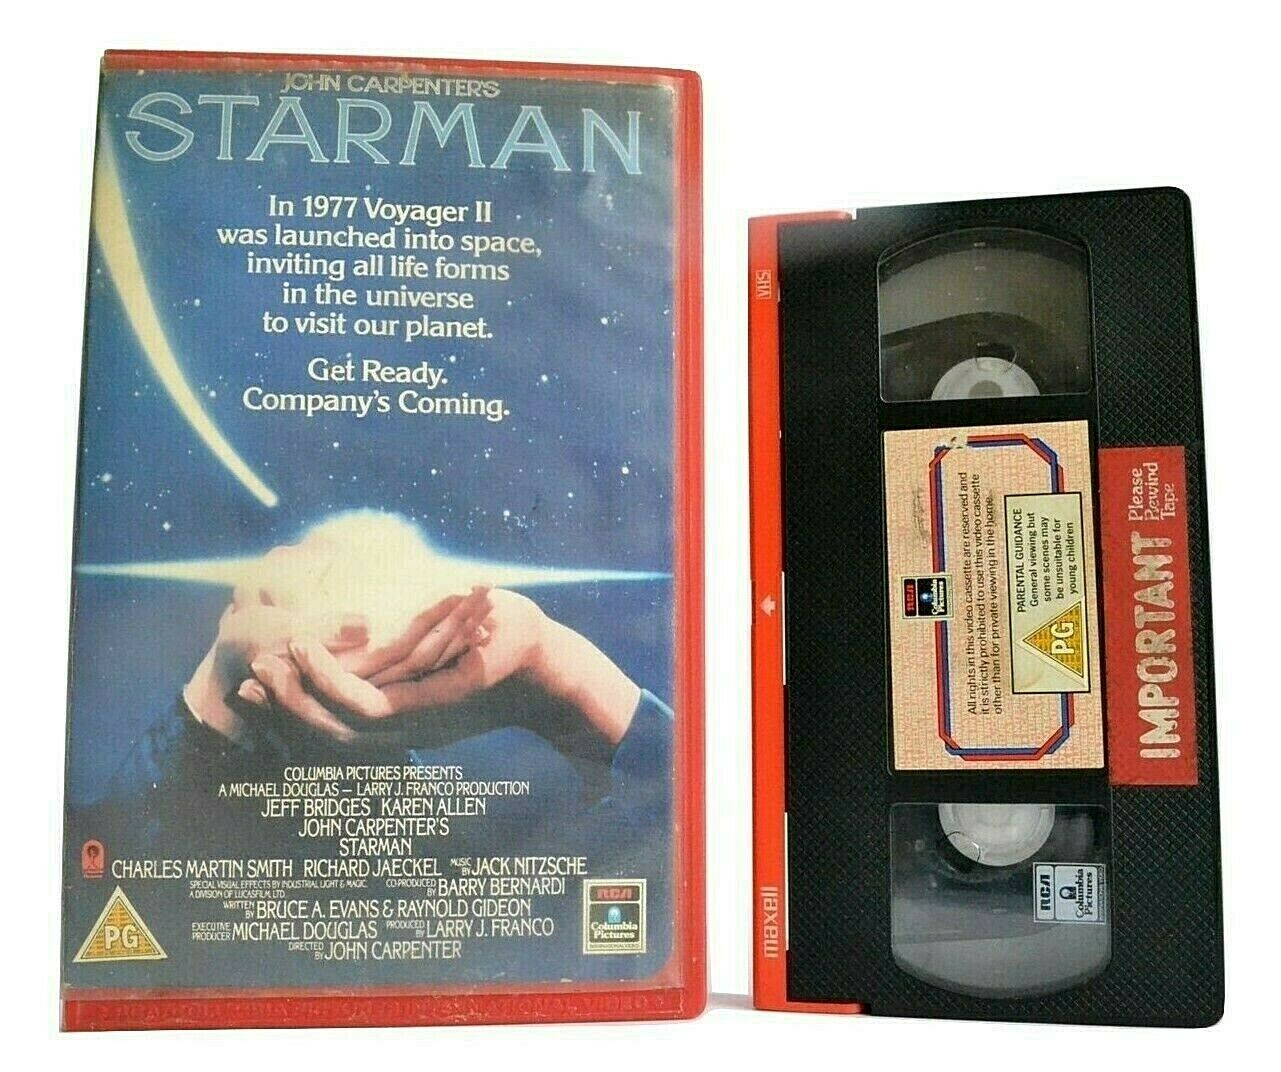 Starman (1984): John Carpenter - Sci-Fi Romance - Large Box - Jeff Bridges - VHS-